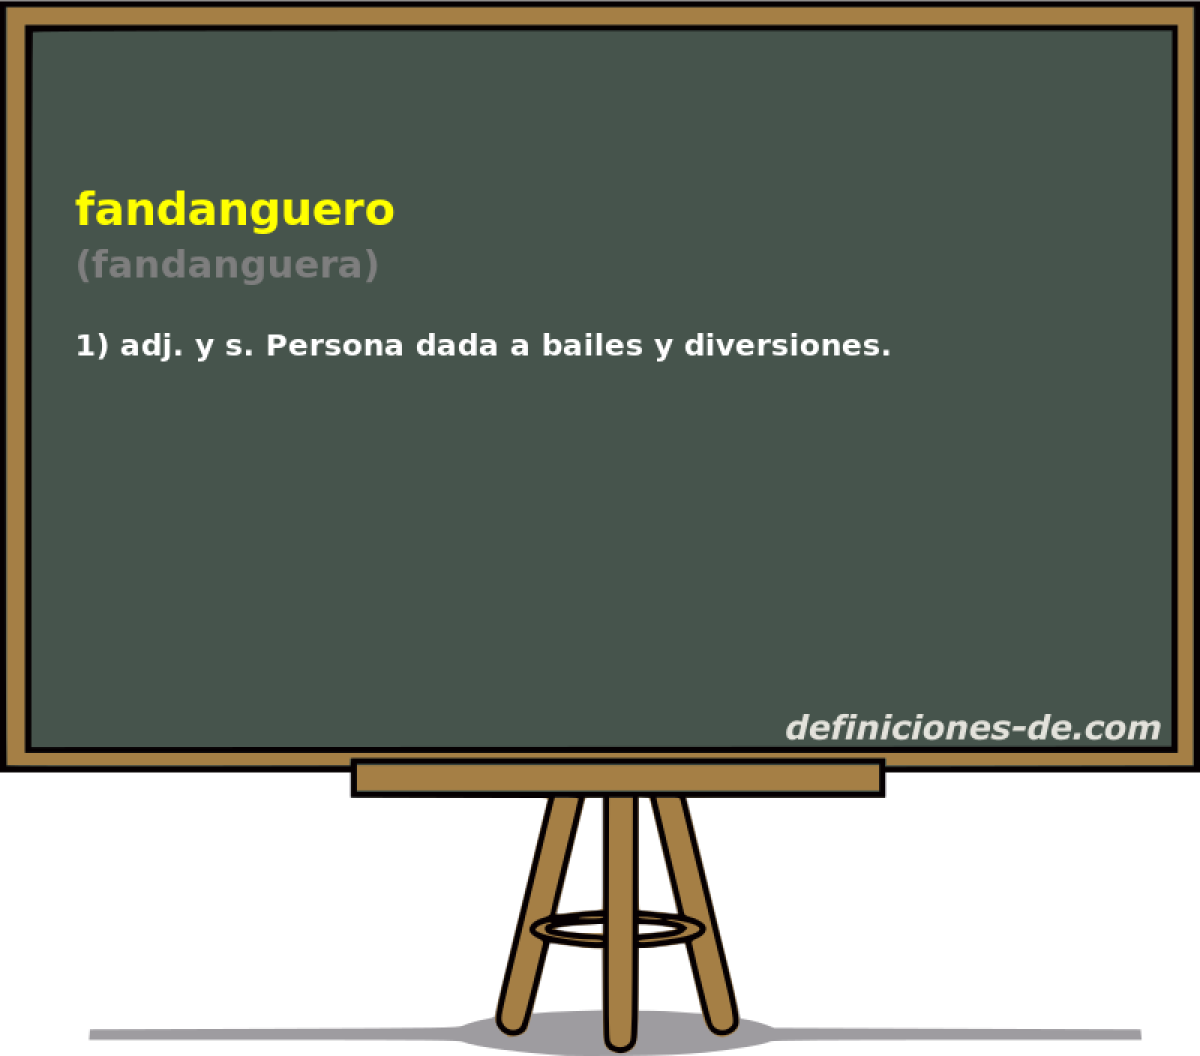 fandanguero (fandanguera)